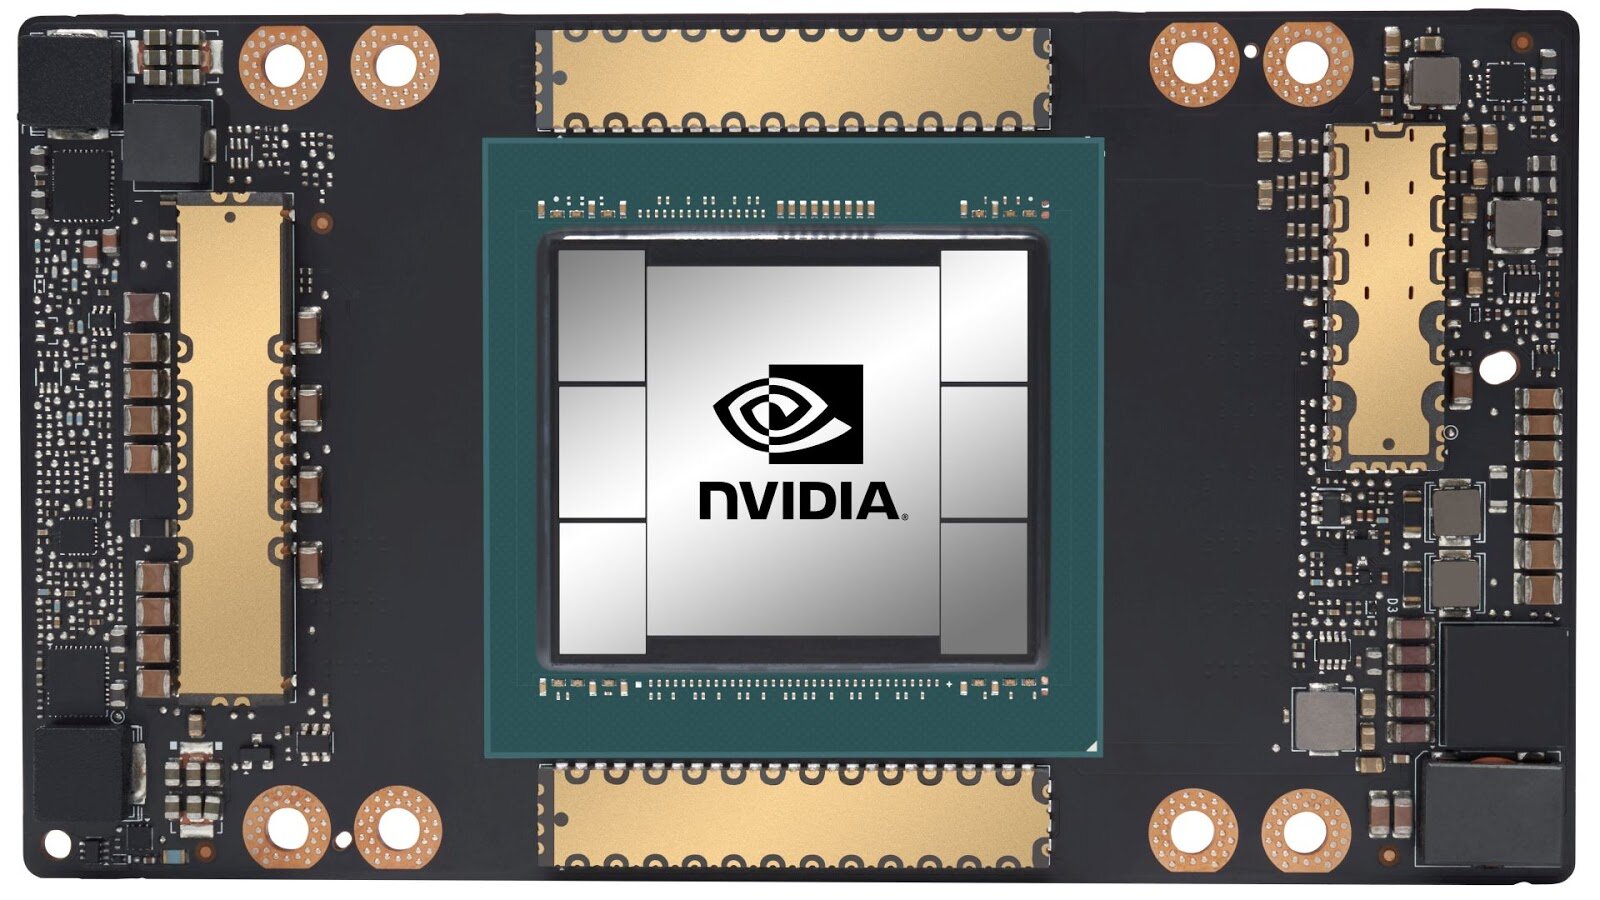 Nvidia A100